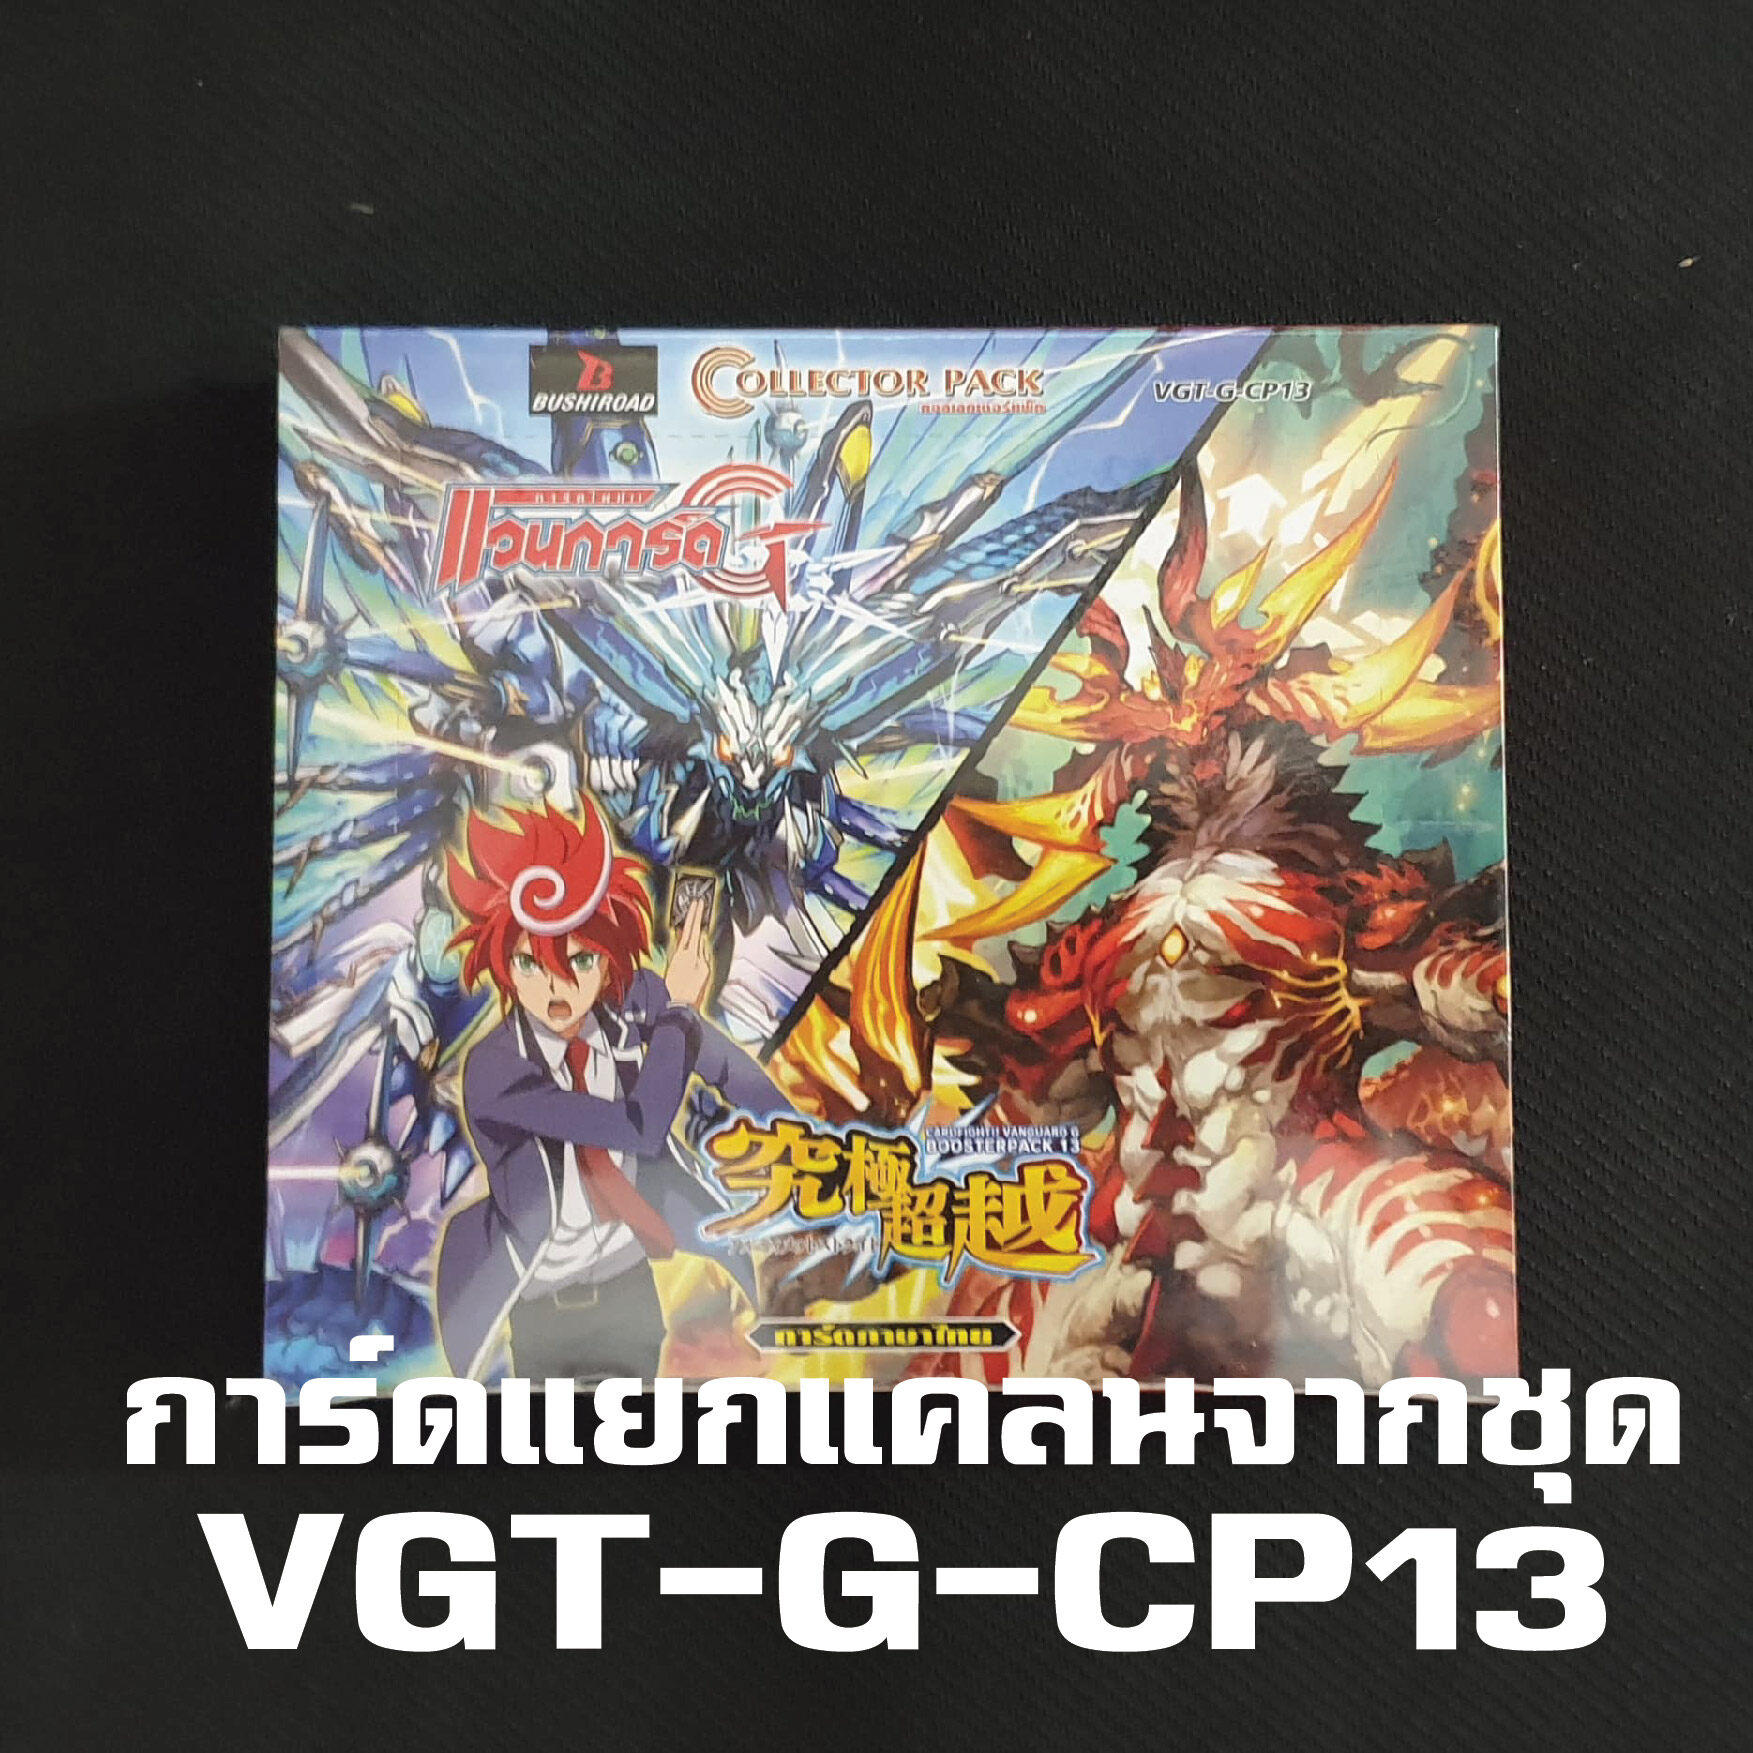 แวนการ์ด แยกแคลน VGT-G-CP13 ทาจิคาเสะ แวนการ์ด G Vanguard Tachikaze การ์ด ฟรอย ทุกใบ